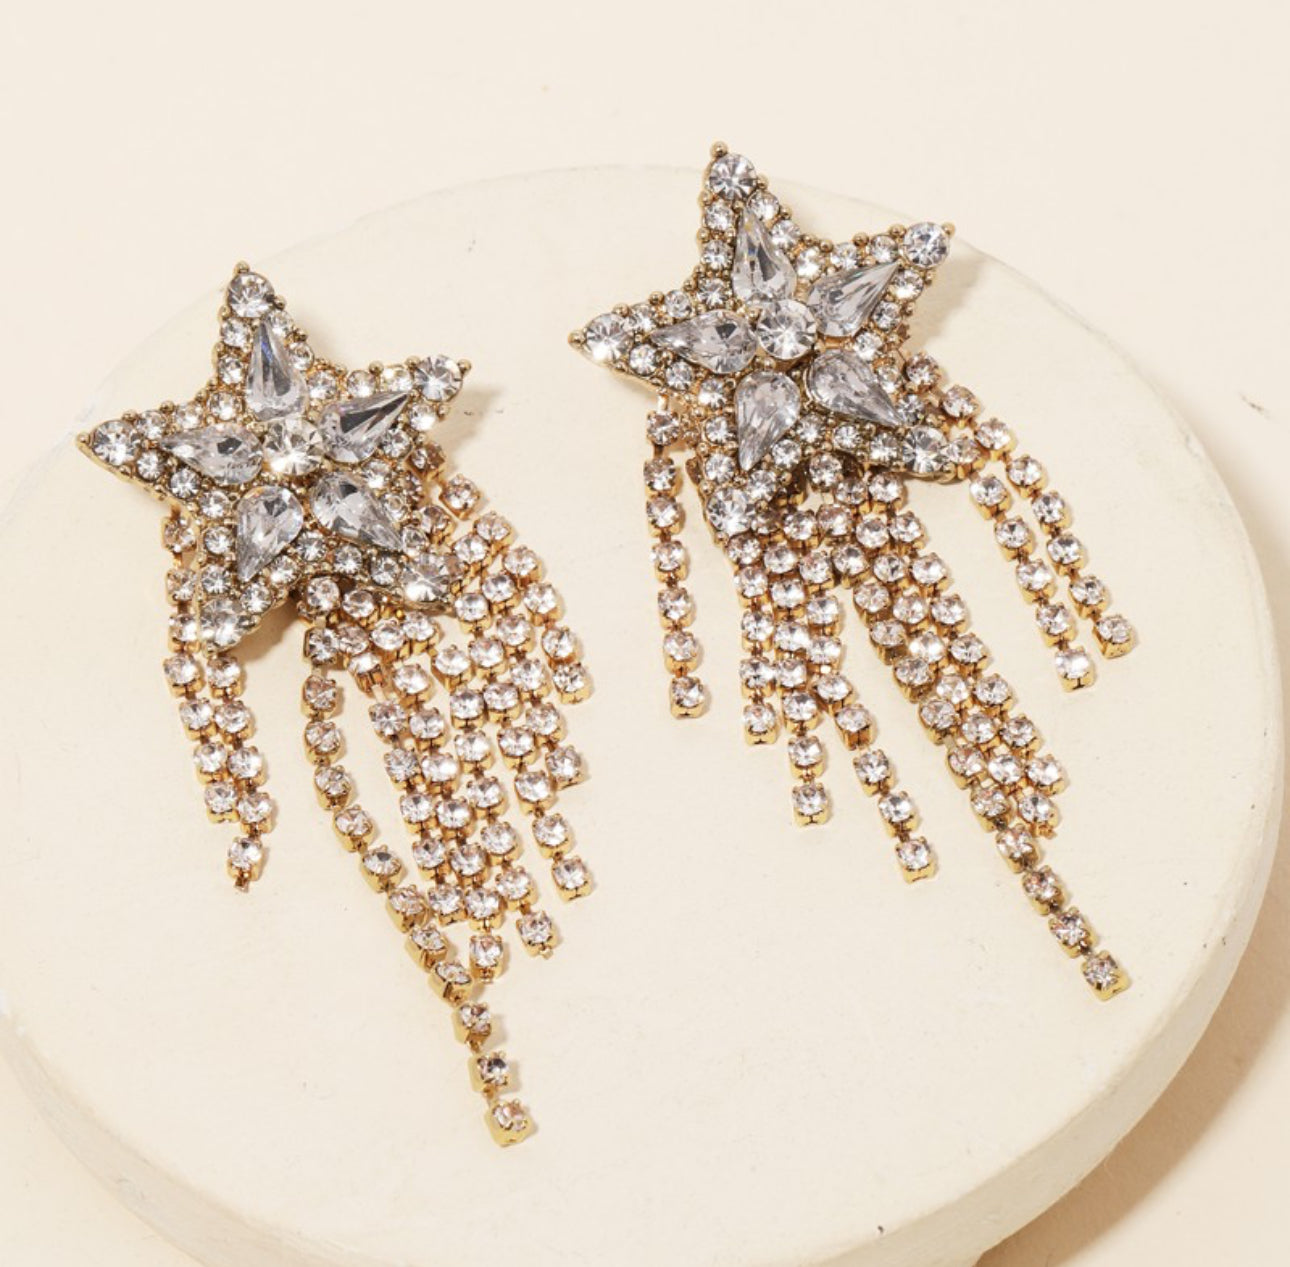 Star fringe earrings